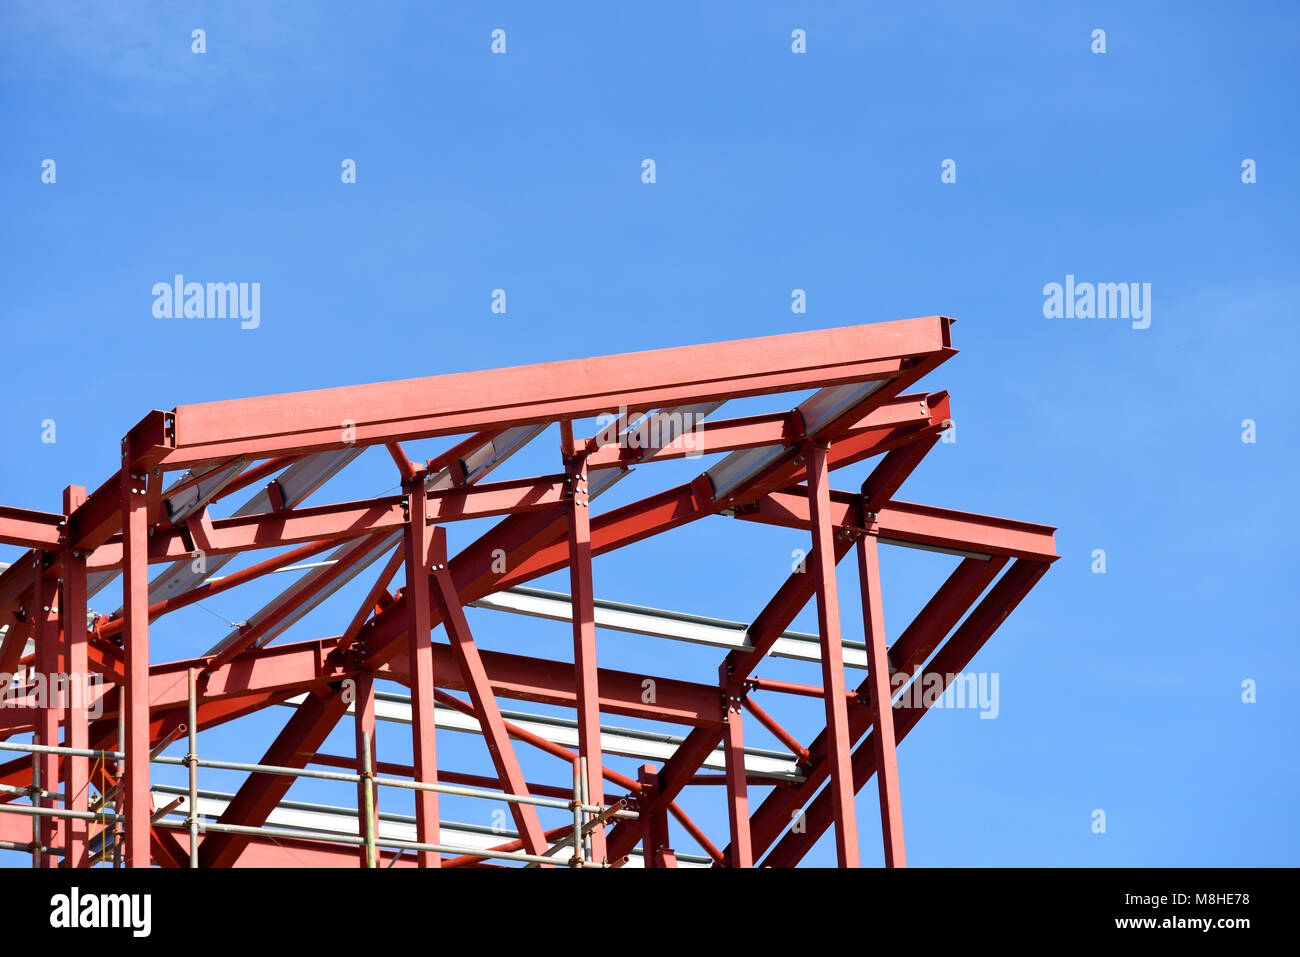 Bauarbeiten sind im Gange. Roter Grundierung lackiertes Stahlwerk. Gerollte Stahlträger rsj-Rahmen. Blauer Himmel Stockfoto